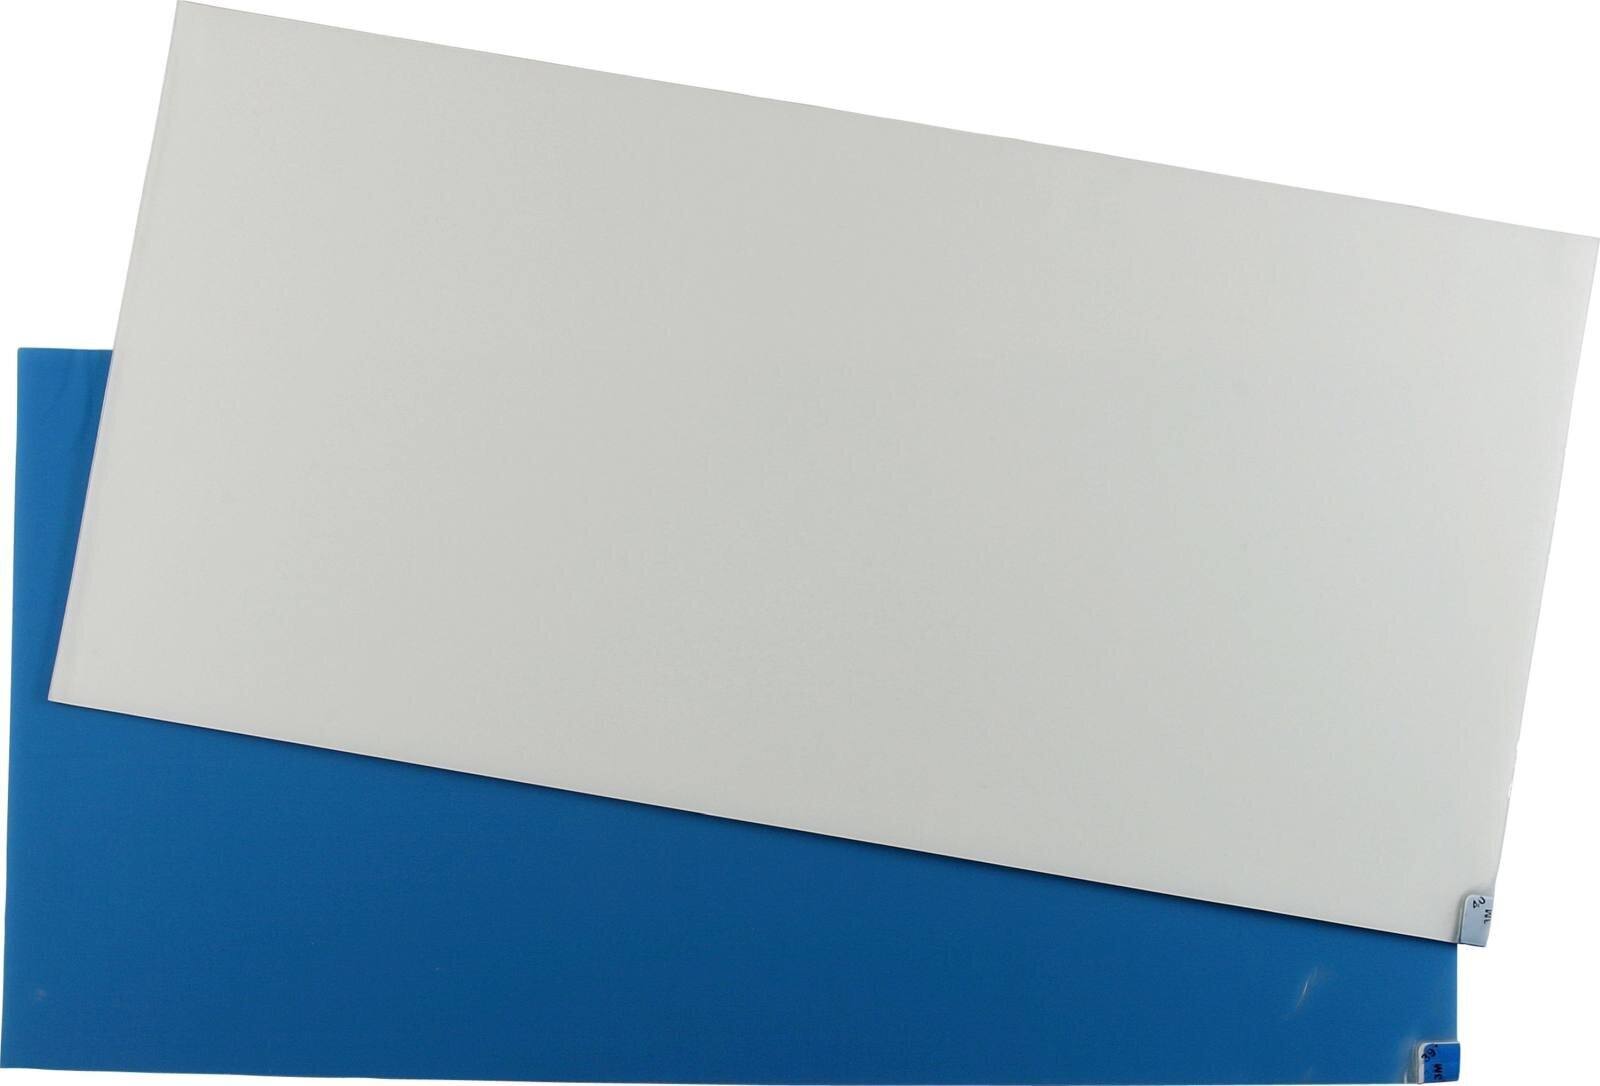 3M 4300 Tapis adhésif pour poussière fine Nomad, blanc, 1,15m x 0,6m, 40pcs couches de polyéthylène transparent